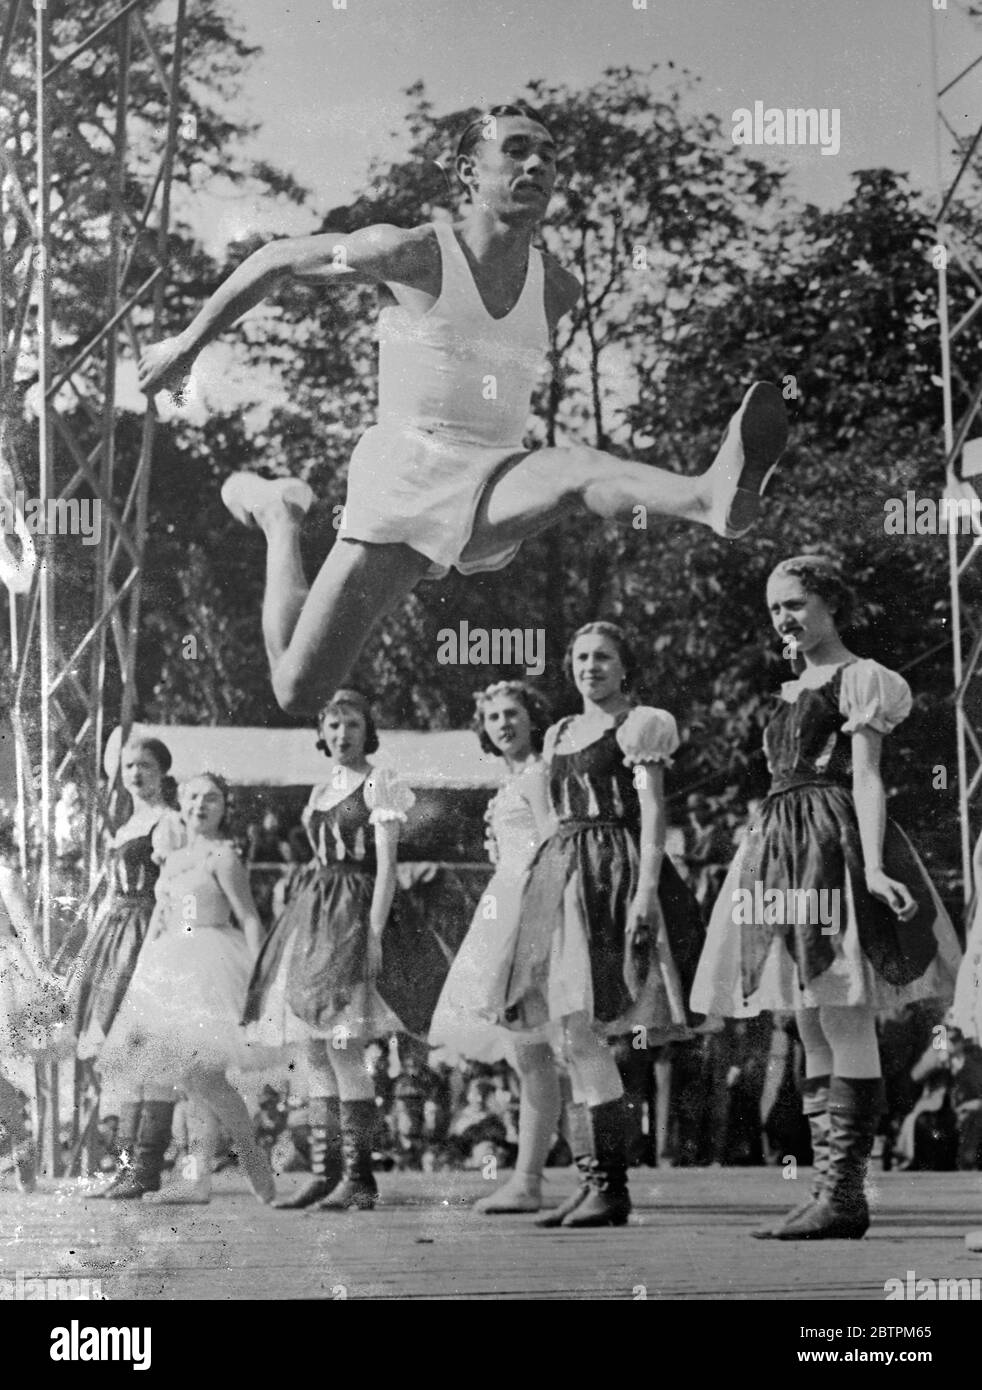 Champion Athlete als Balletttänzer Jules Ladoumègue , Champion Langstreckenläufer von Frankreich , erschien mit dem Ballett von der Pariser Oper bei der Vorstellung bei der jährlichen Fete für Kinder in Jardin d ' Acclimatation im Bois de Boulogne , Paris statt . Foto zeigt : Jules Ladoumègue in der Luft, wie er mit dem Ballett. 22 Mai 1936 Stockfoto